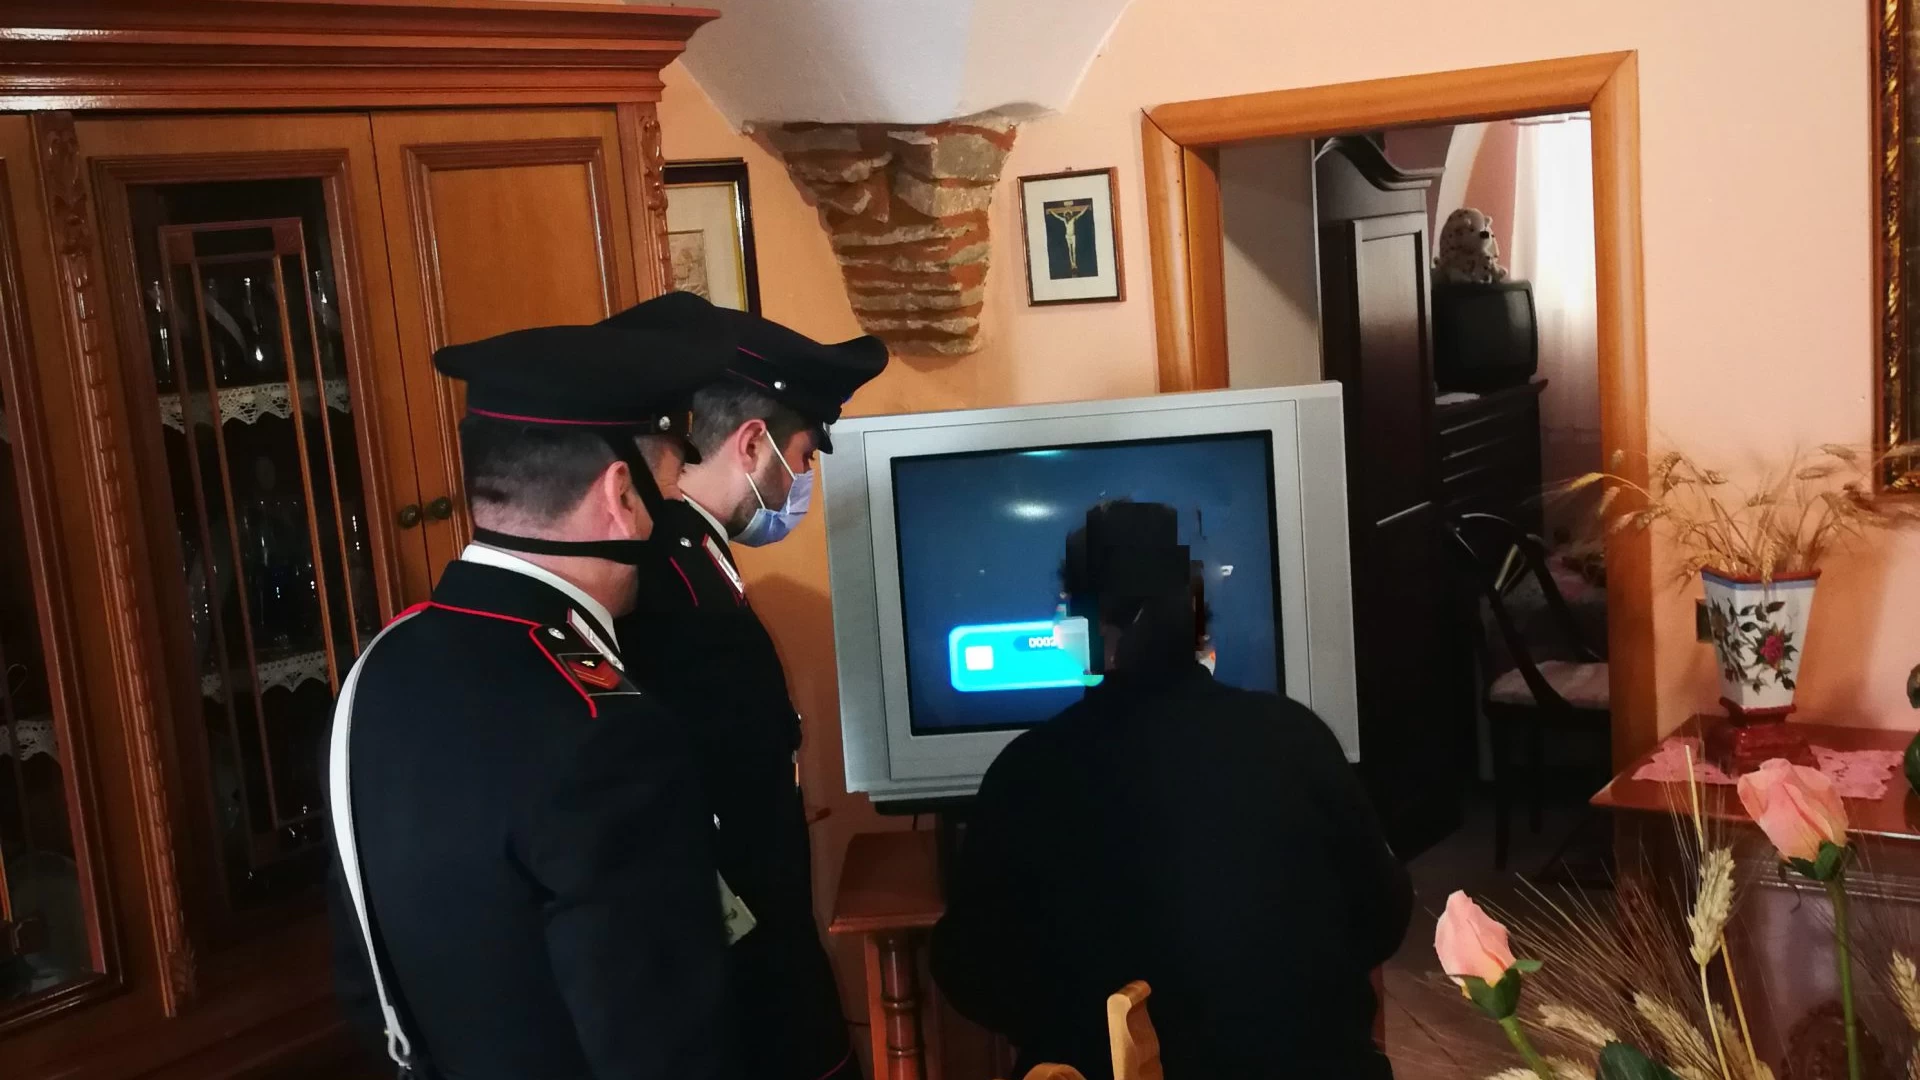 Anziana chiede l’aiuto dei Carabinieri perché il televisore non funziona. I militari provvedono al ripristino.